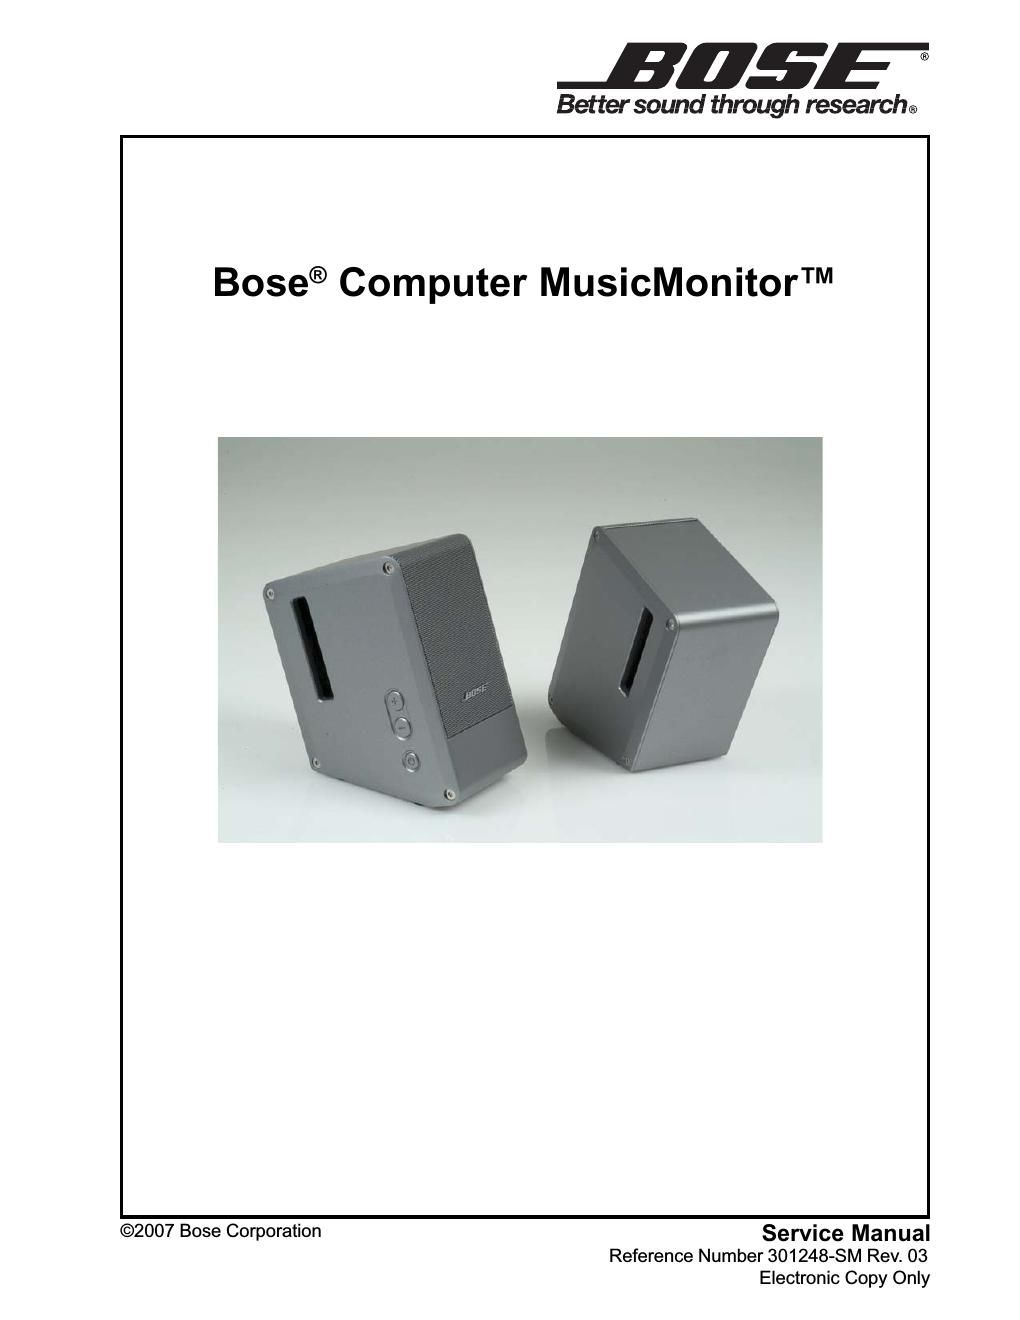 bose computer musicmonitor